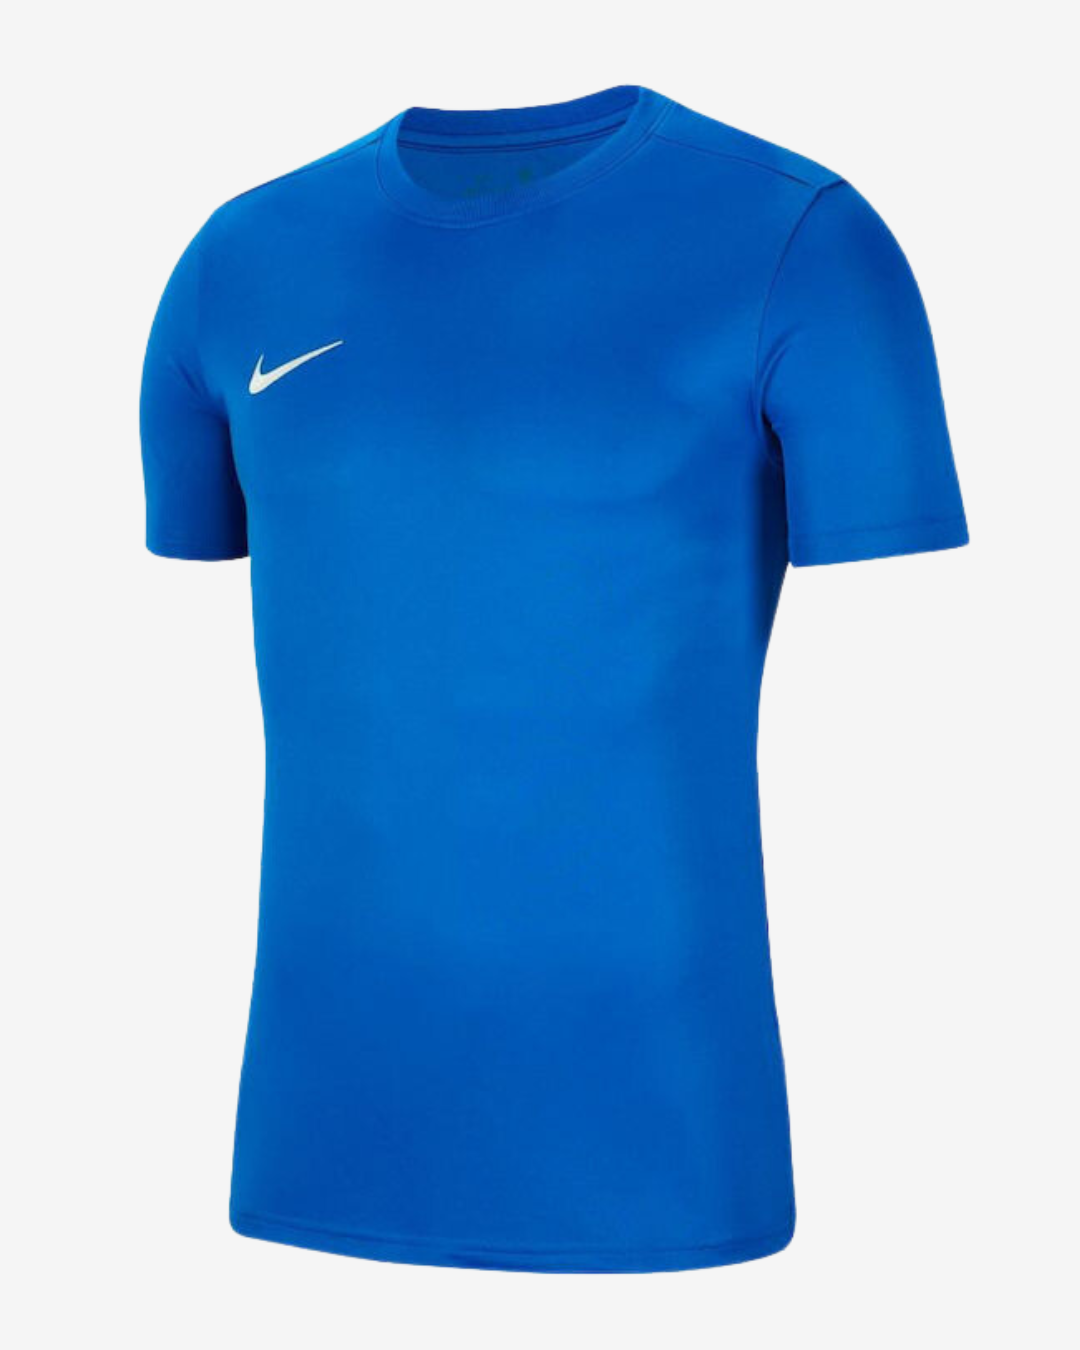 Billede af Nike Dri-fit park 7 t-shirt - Blå - Str. S - Modish.dk